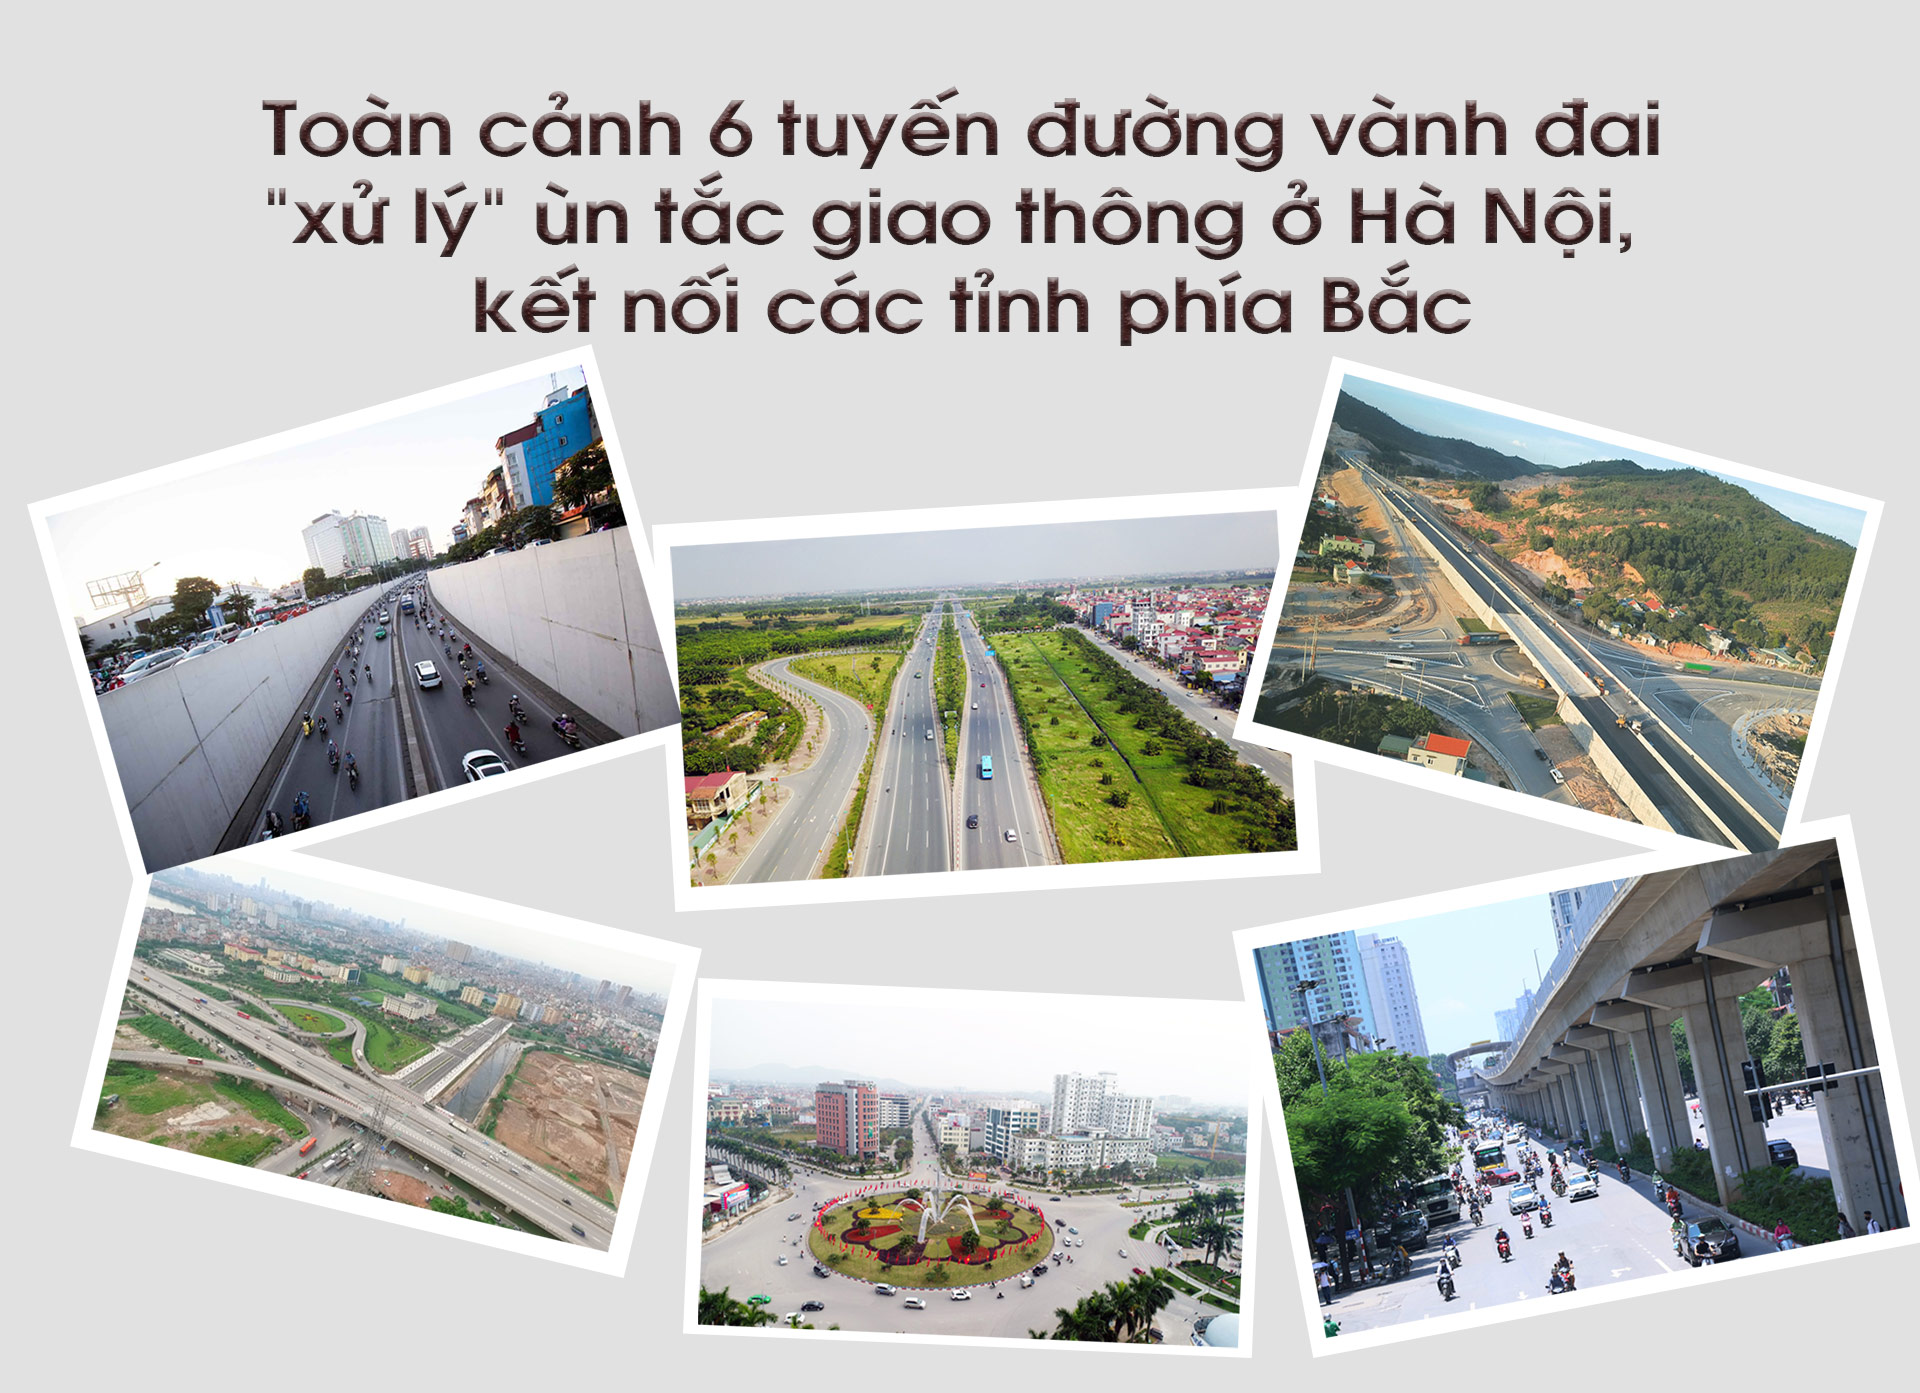 Toàn cảnh 6 tuyến đường vành đai &#34;xử lý&#34; ùn tắc giao thông ở Hà Nội, kết nối các tỉnh phía Bắc - 1